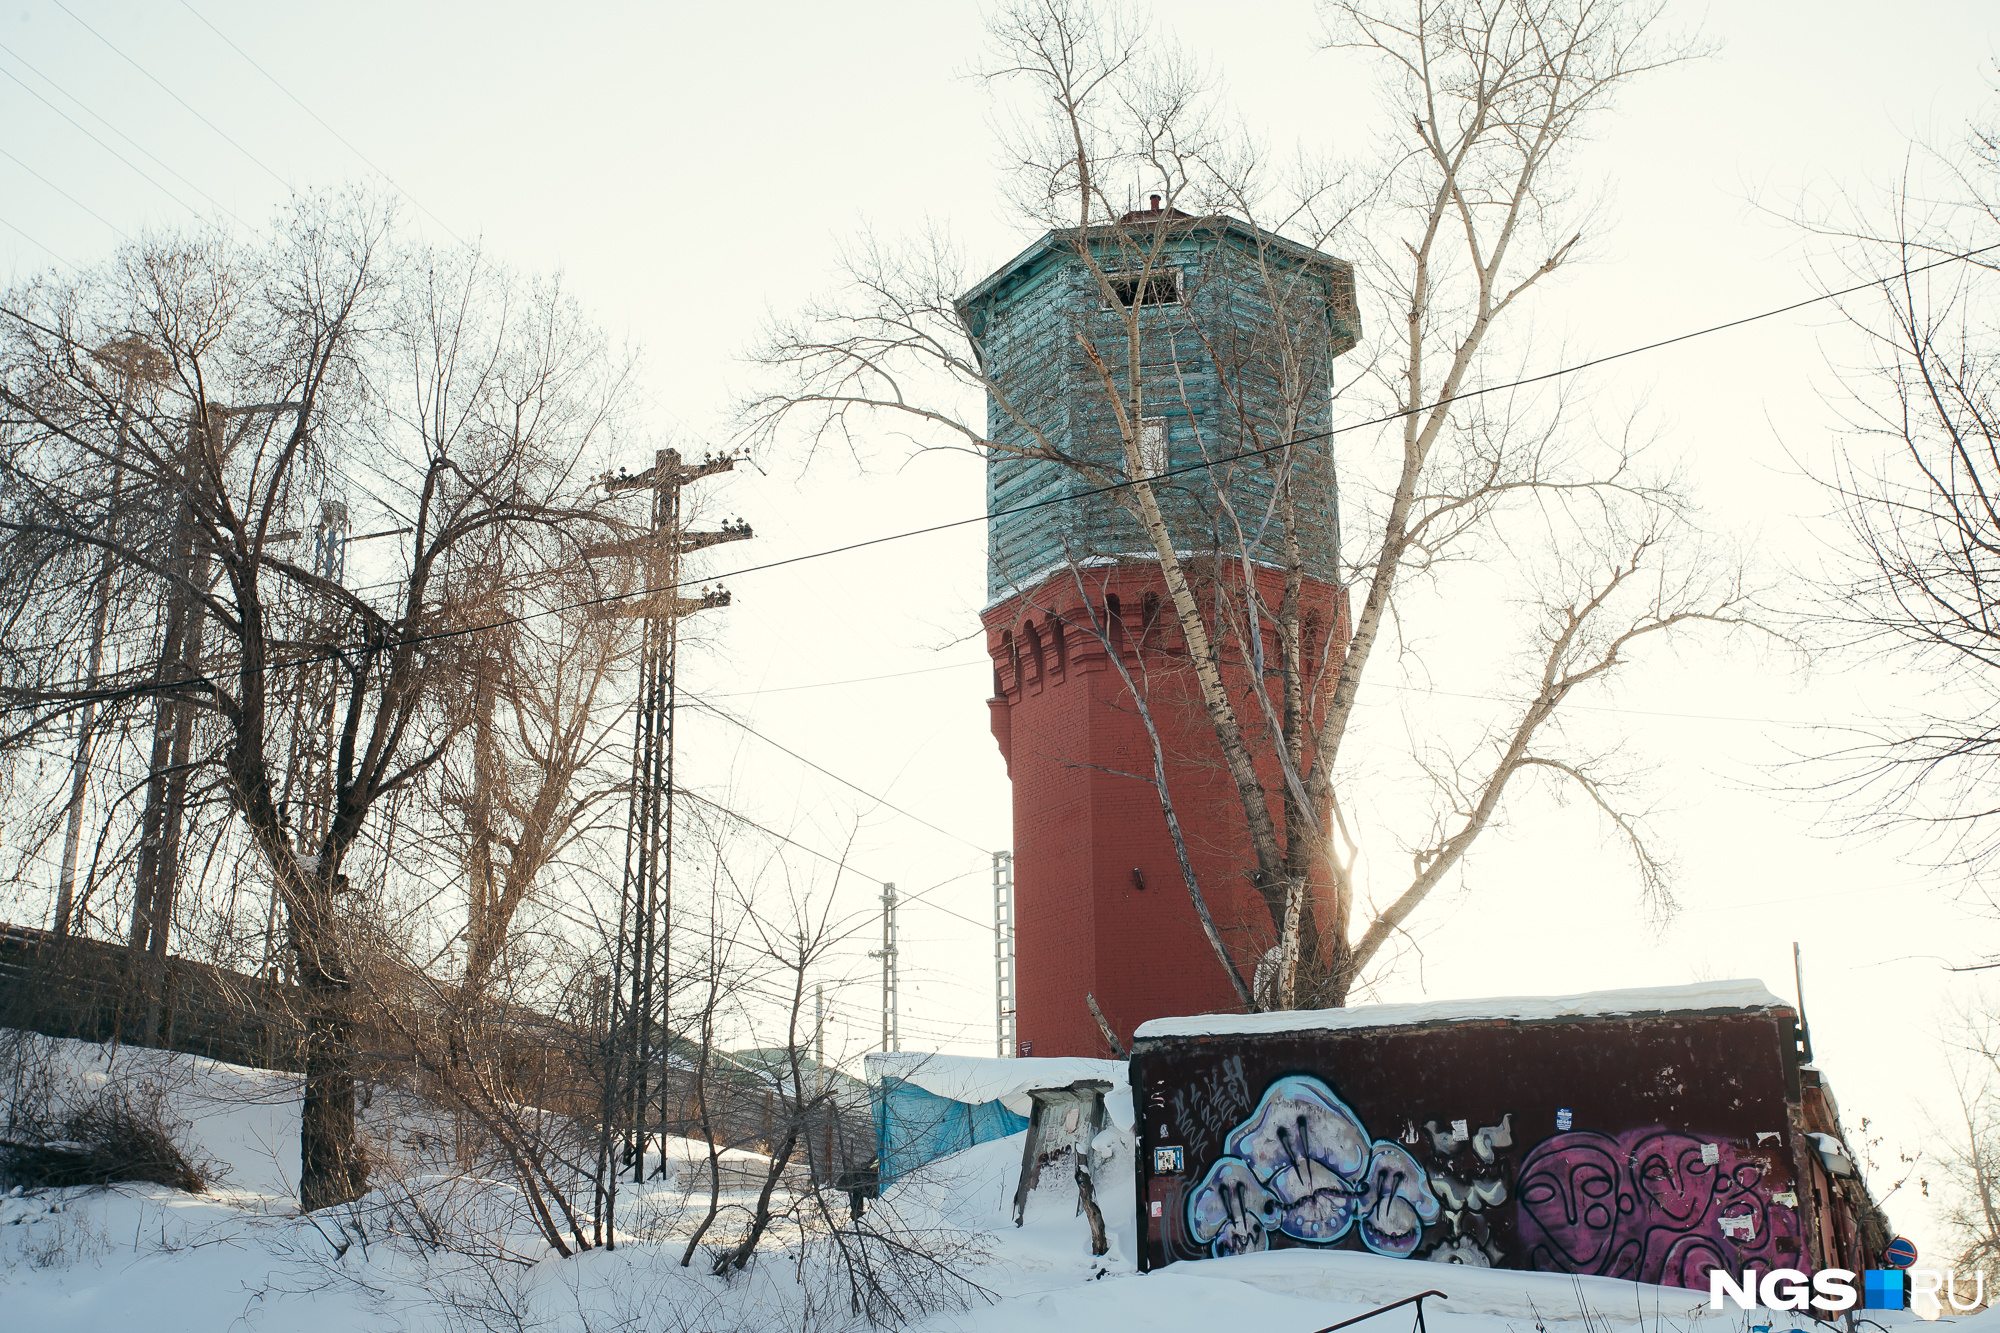 Башня в гаражах над Тоннельным спуском обозначена номером 2. Ее построили в начале 1910-х годов, но она выглядит объективно хуже своих ровесниц, стоящих у железнодорожной линии